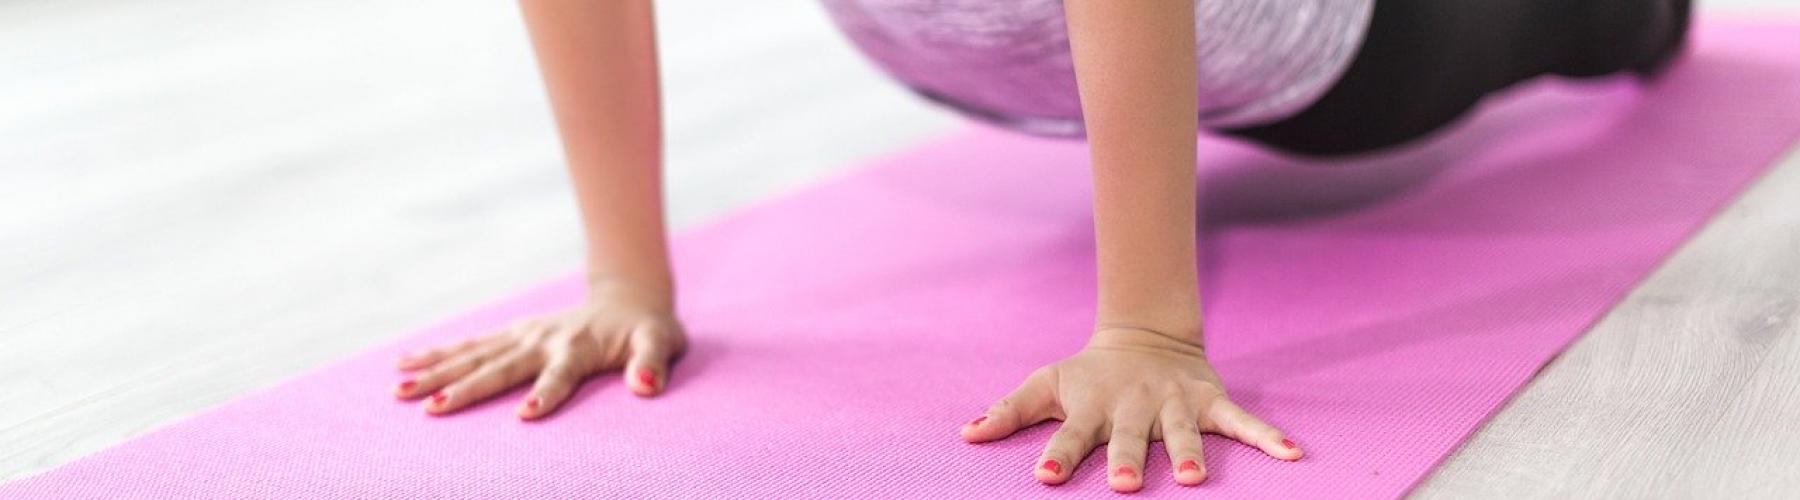 Buste femme en position de yoga sur un tapis